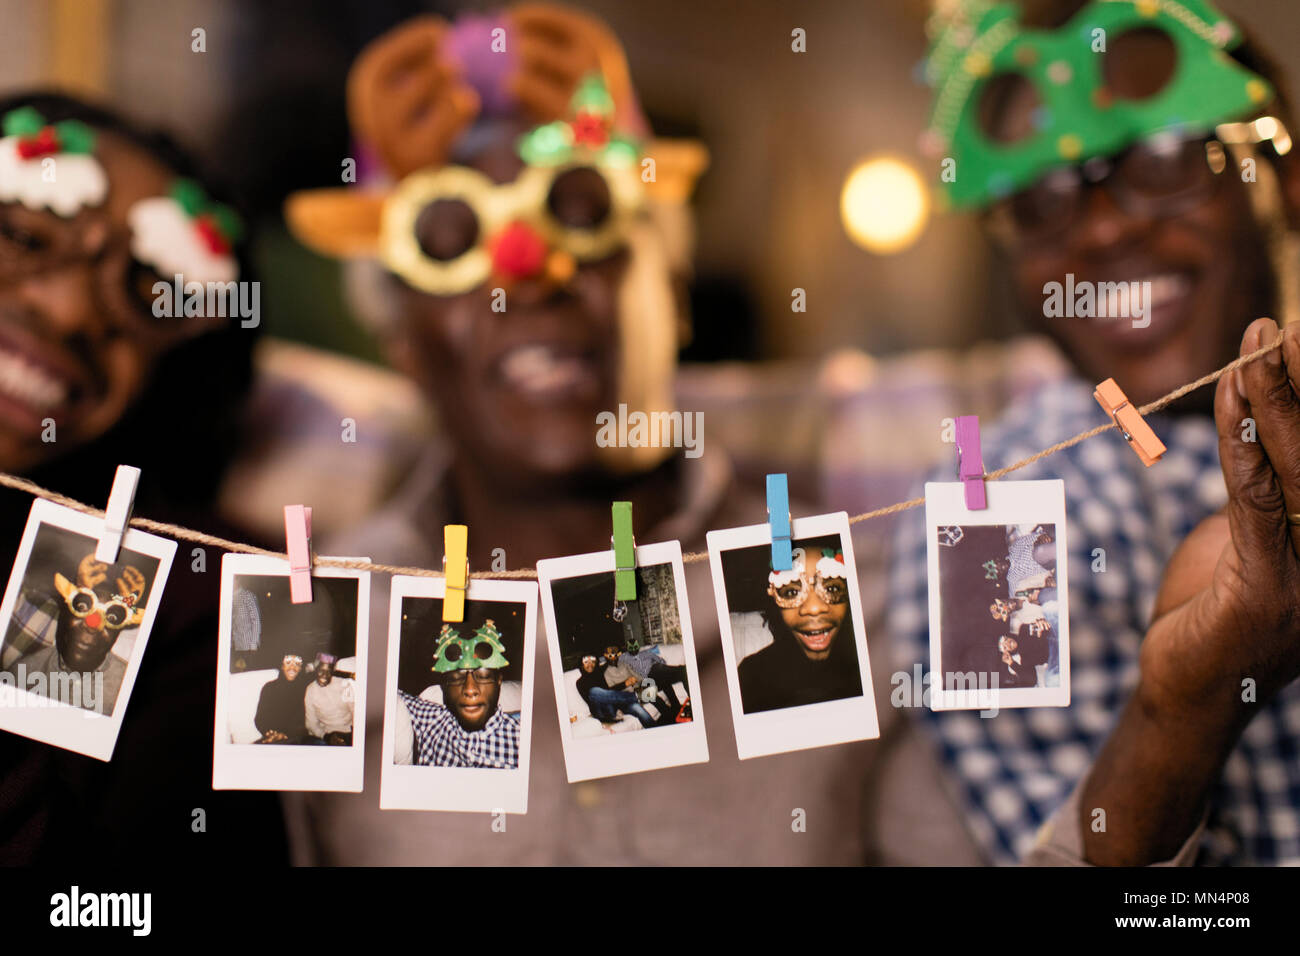 Portrait verspielten Familie in Weihnachten kostüm Schutzbrille Übersicht Instant Fotos Stockfoto